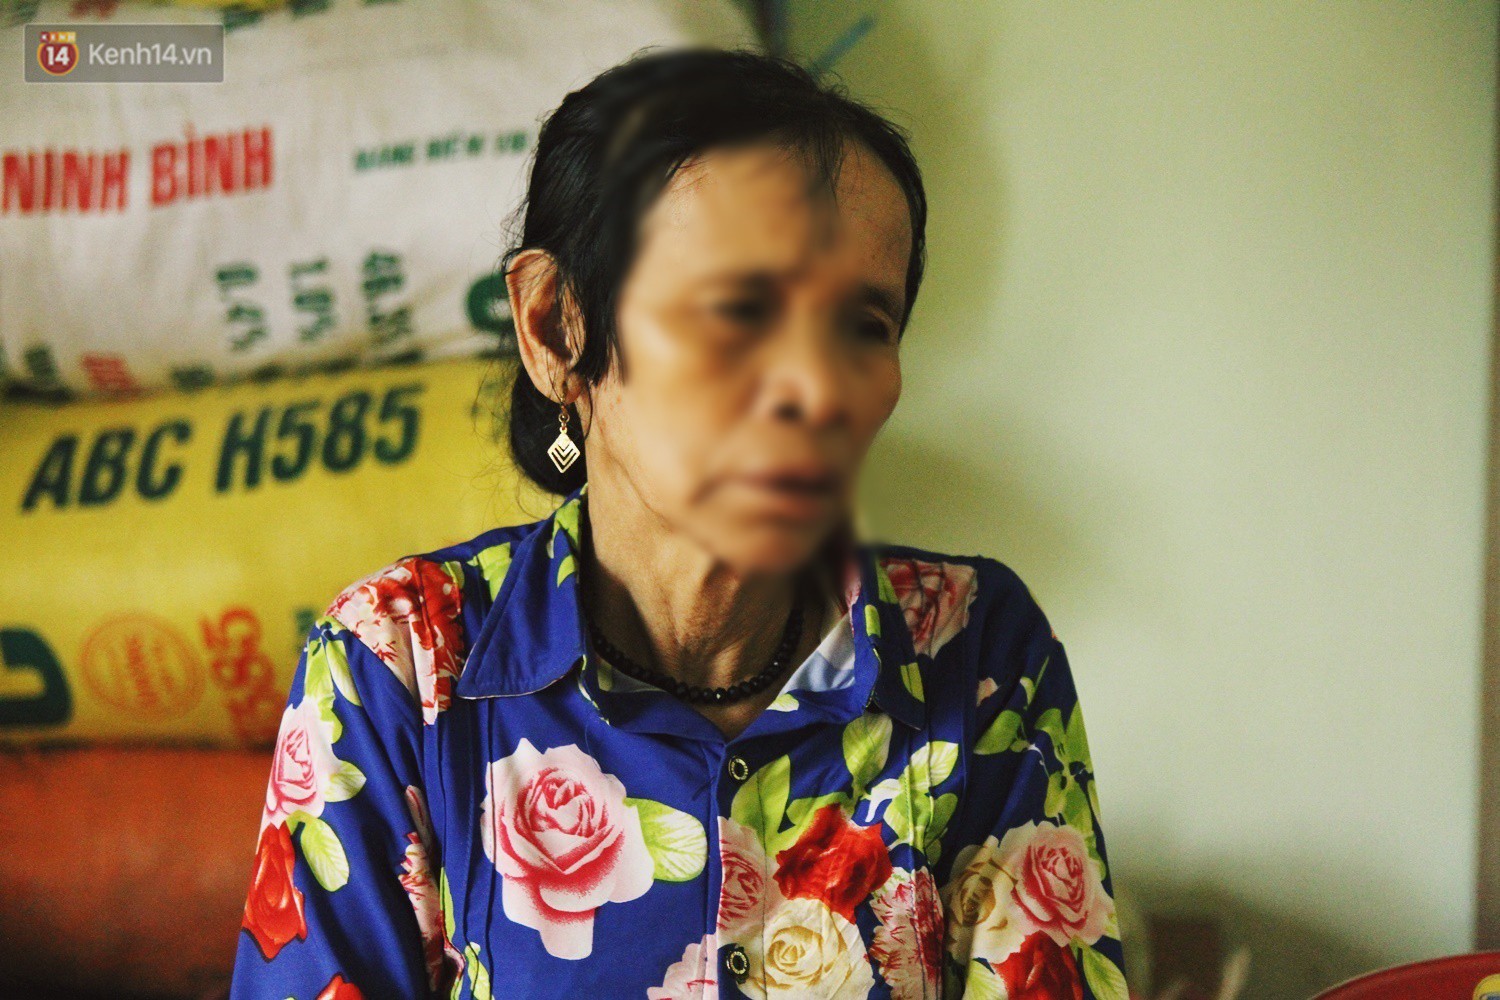 Mẹ Châu Việt Cường đau đớn khi con là nghi phạm giết người: Muốn lên Hà Nội thăm con, nhưng tiền đâu mà đi - Ảnh 3.